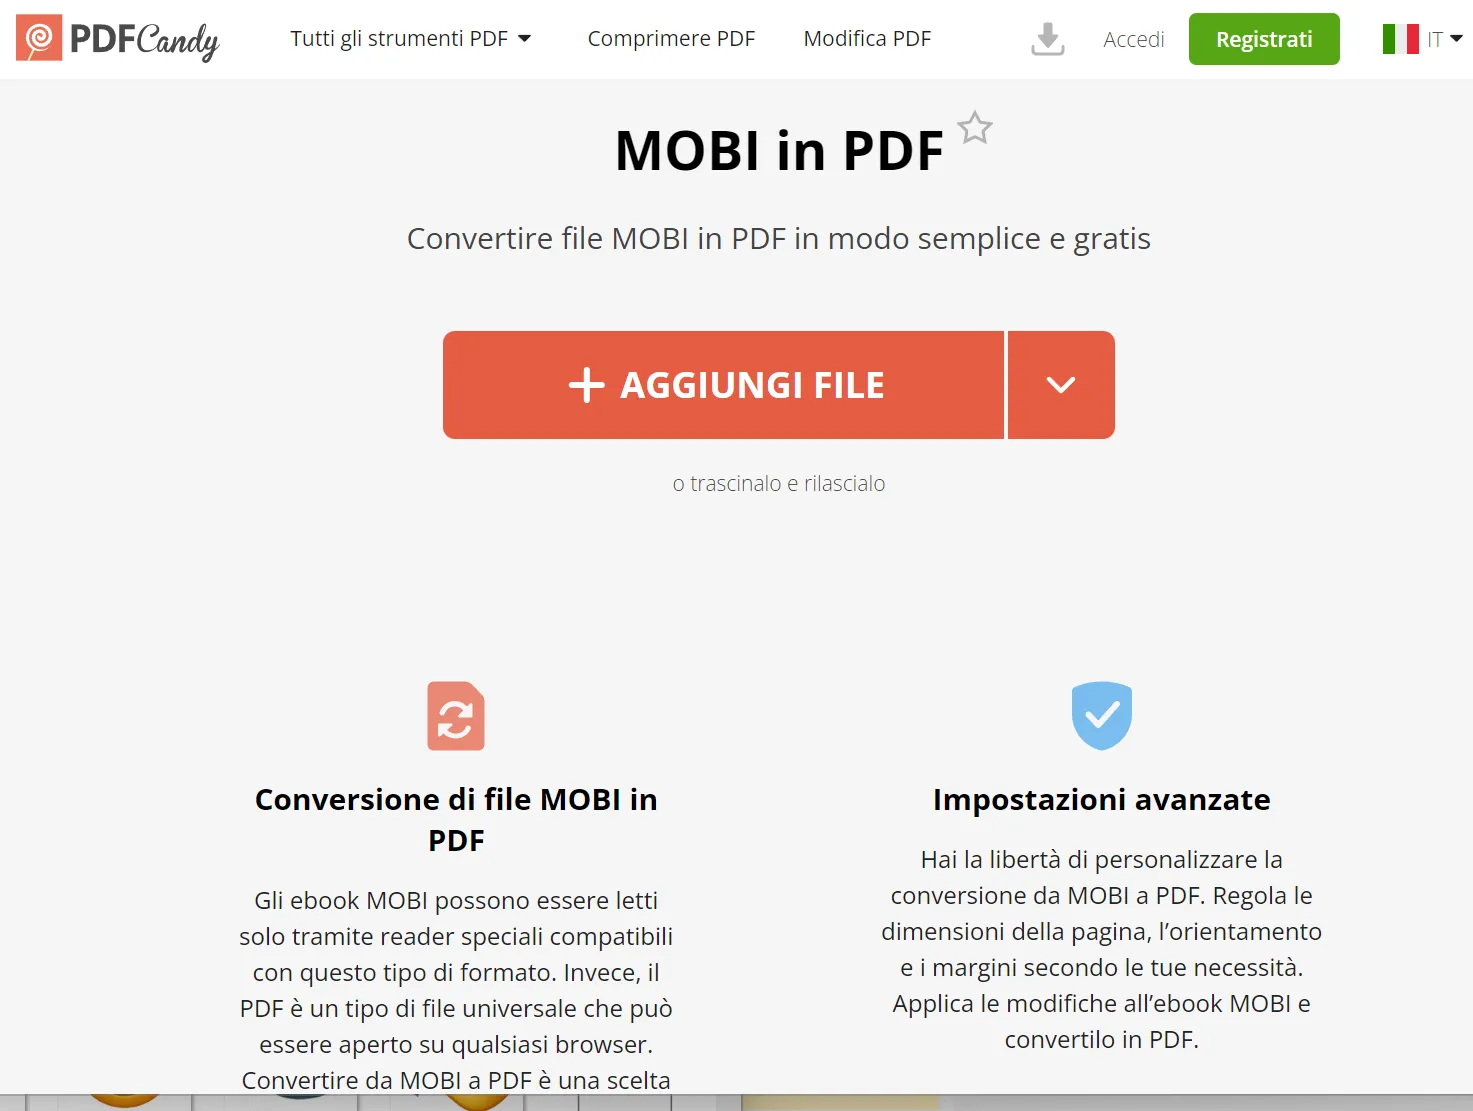 Da MOBI a PDF con PDF Candy